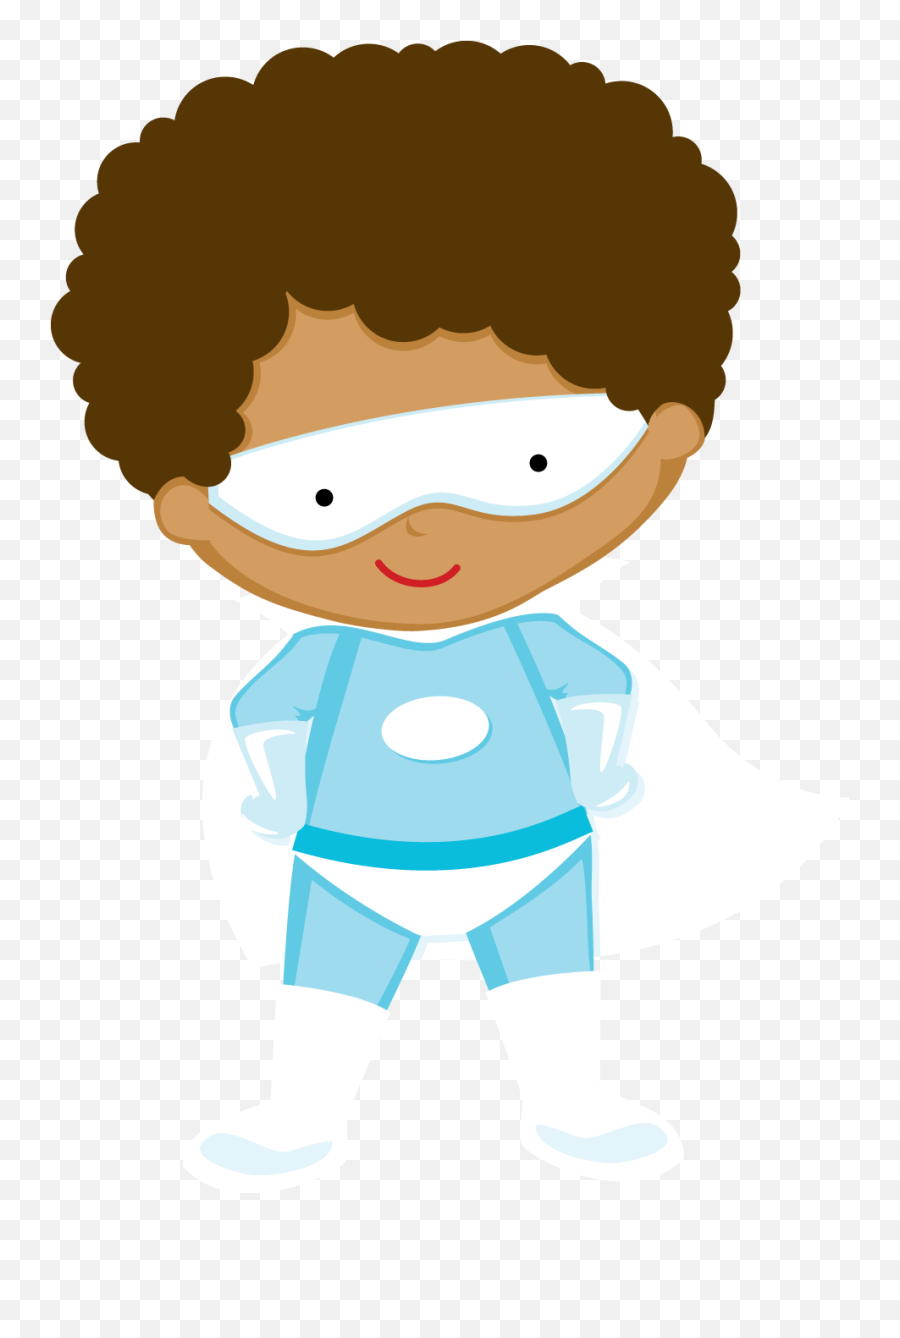 Kids Dressed As Superheroes Clipart - Oh My Fiesta For Geeks Minus Futbol Emoji,Clipart Dressed